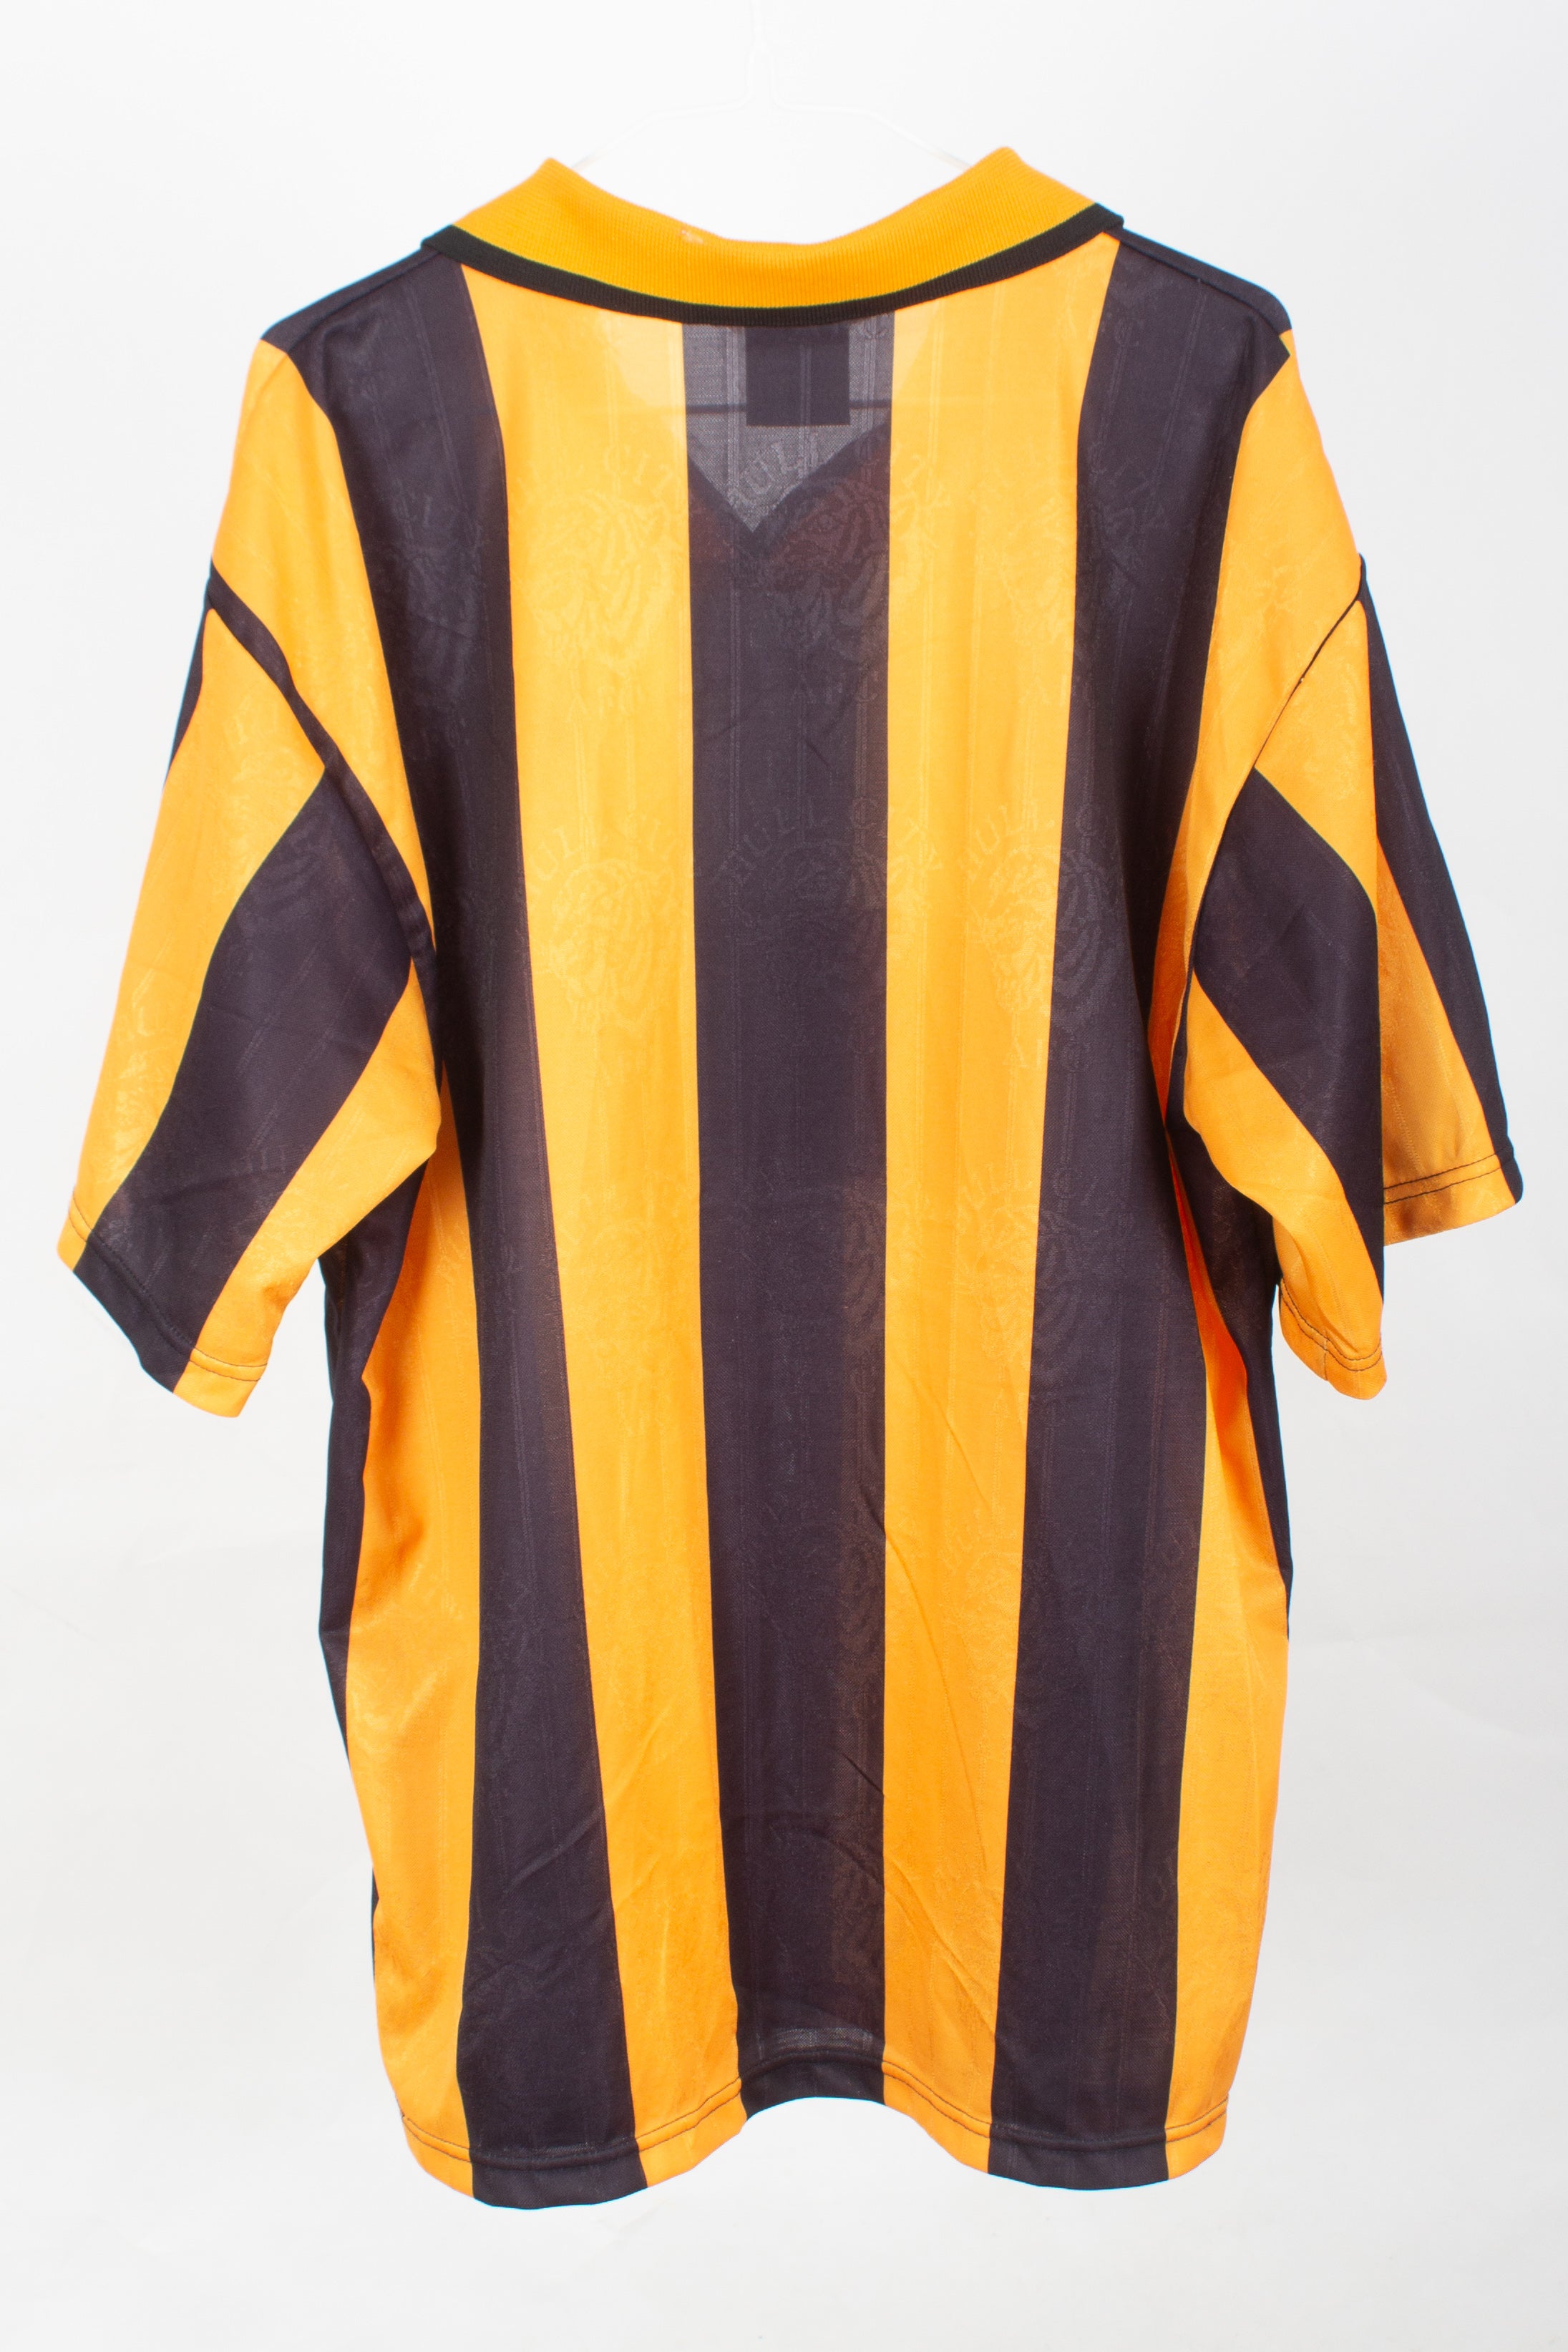 Hull City 1997/98 Home Shirt (L)